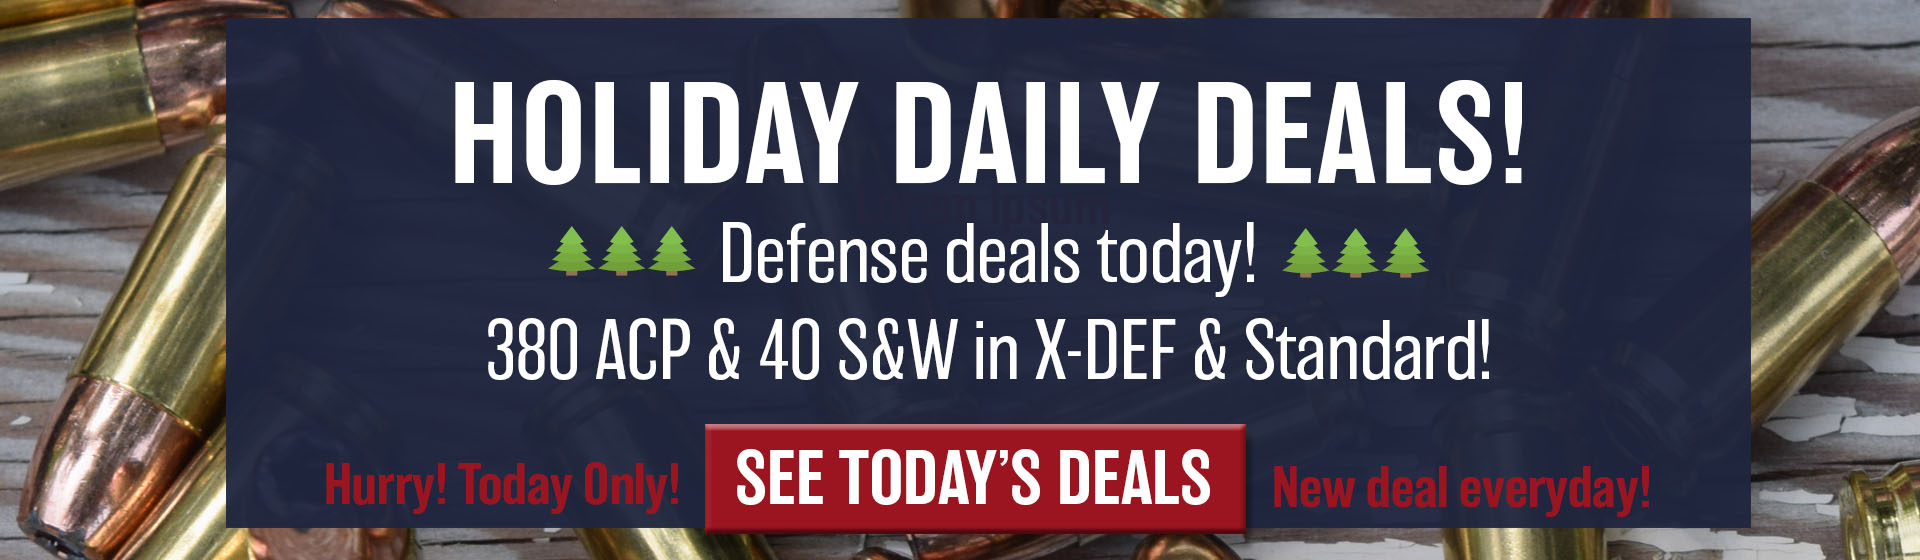 Thursday is Defense Deals! 